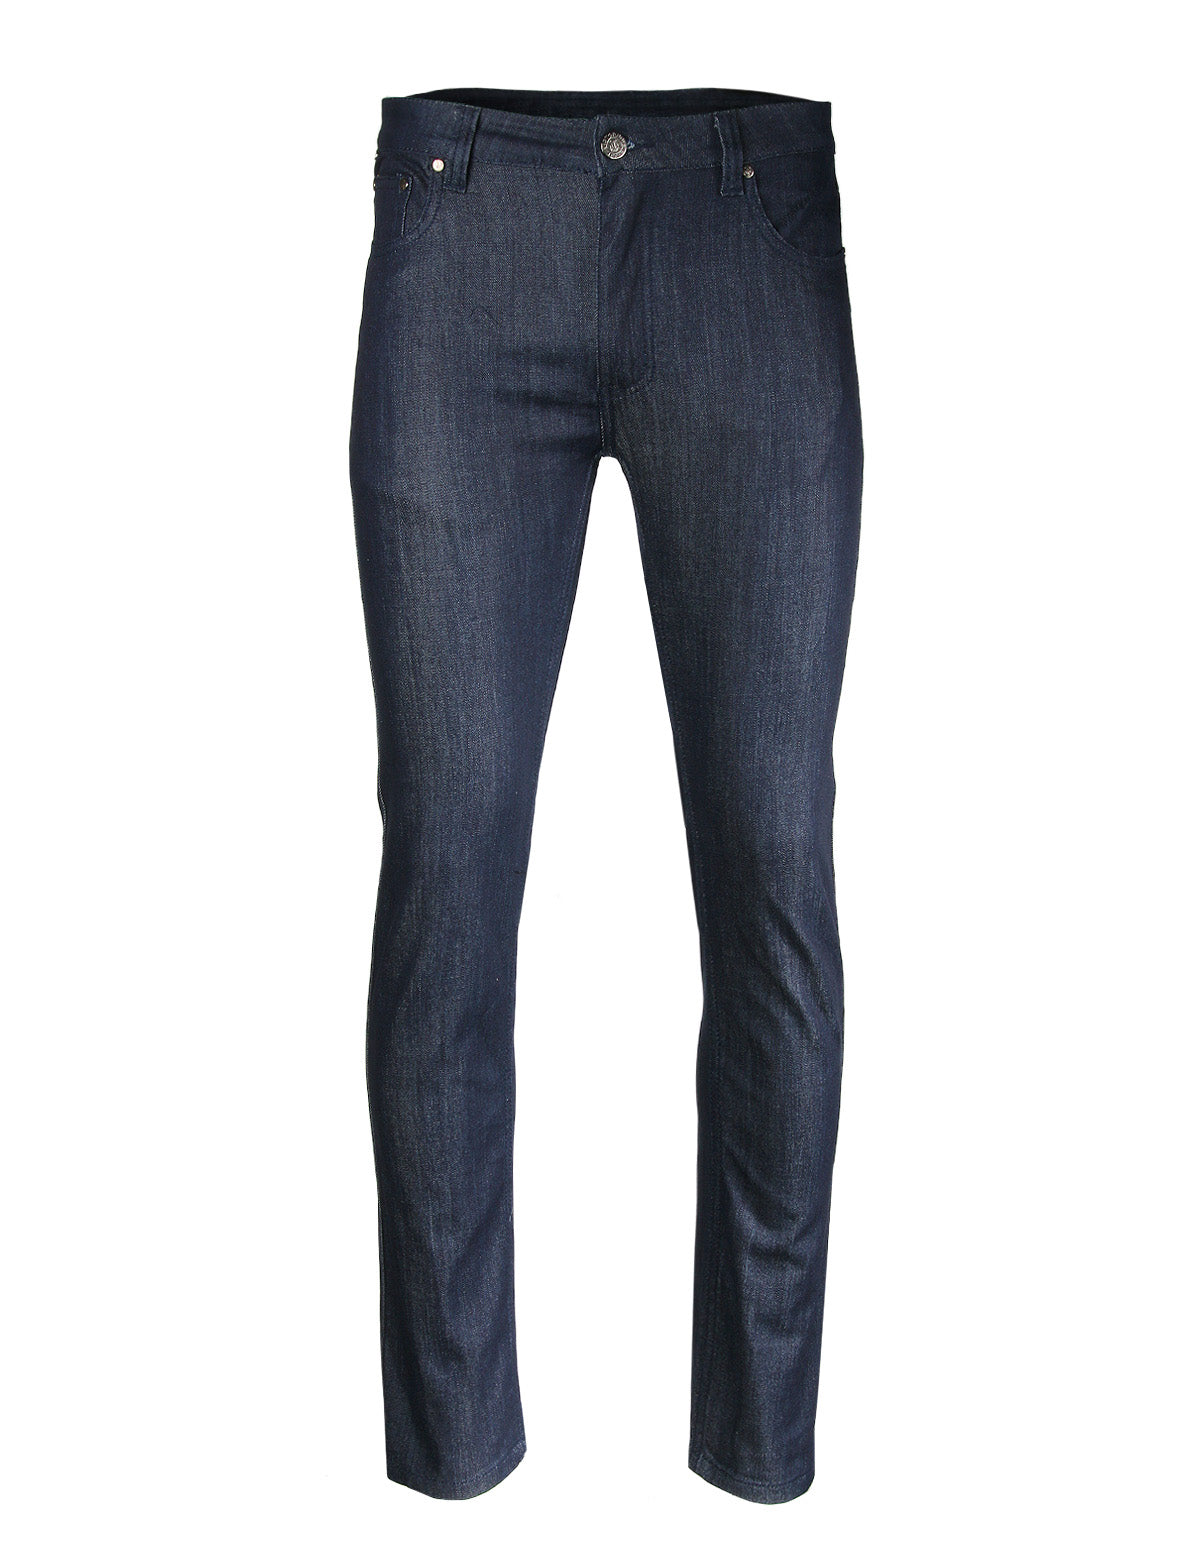 Zimego Men's Slim Cut Skinny Fit Stretch Raw Denim Pants Classic Five Pocket Jeans - Indigo 32W x 30L / Indigo